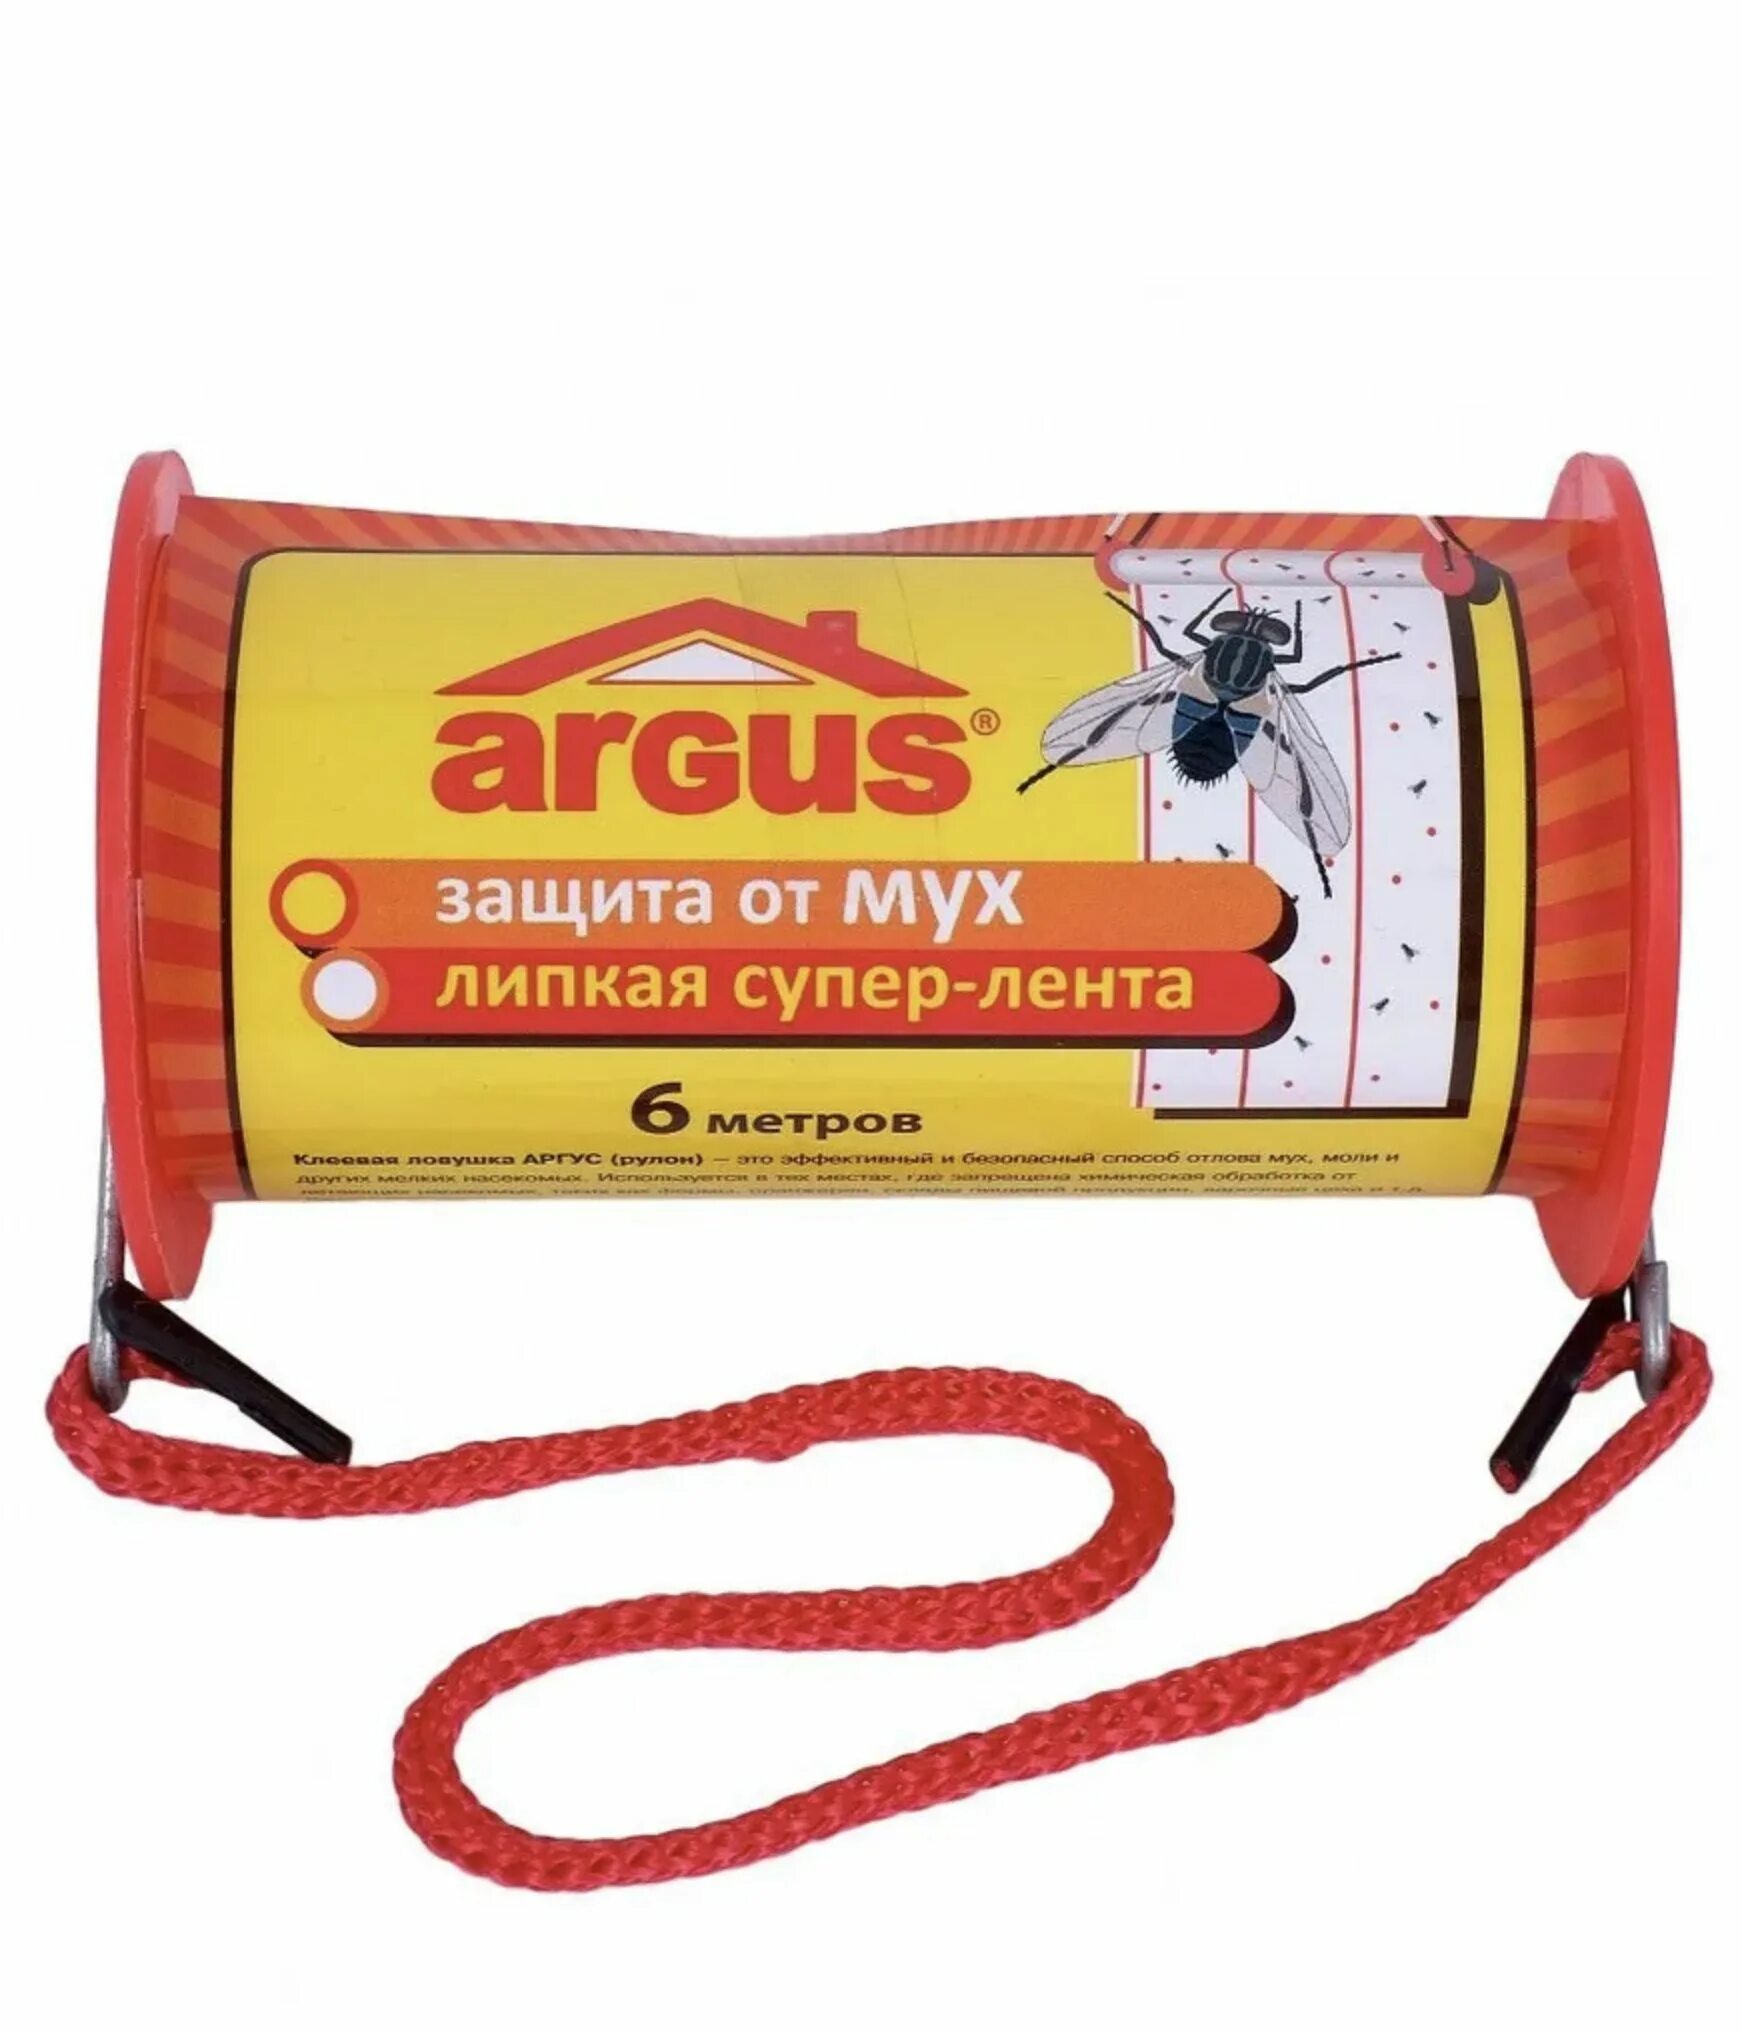 Защита от мух. ЛОВУШКА клеевая для мух "Argus", 600 х 10 см. Липкая лента от мух Argus 1шт.. Клеевая ЛОВУШКА ролик 6м*10 см. Липучка для мух.